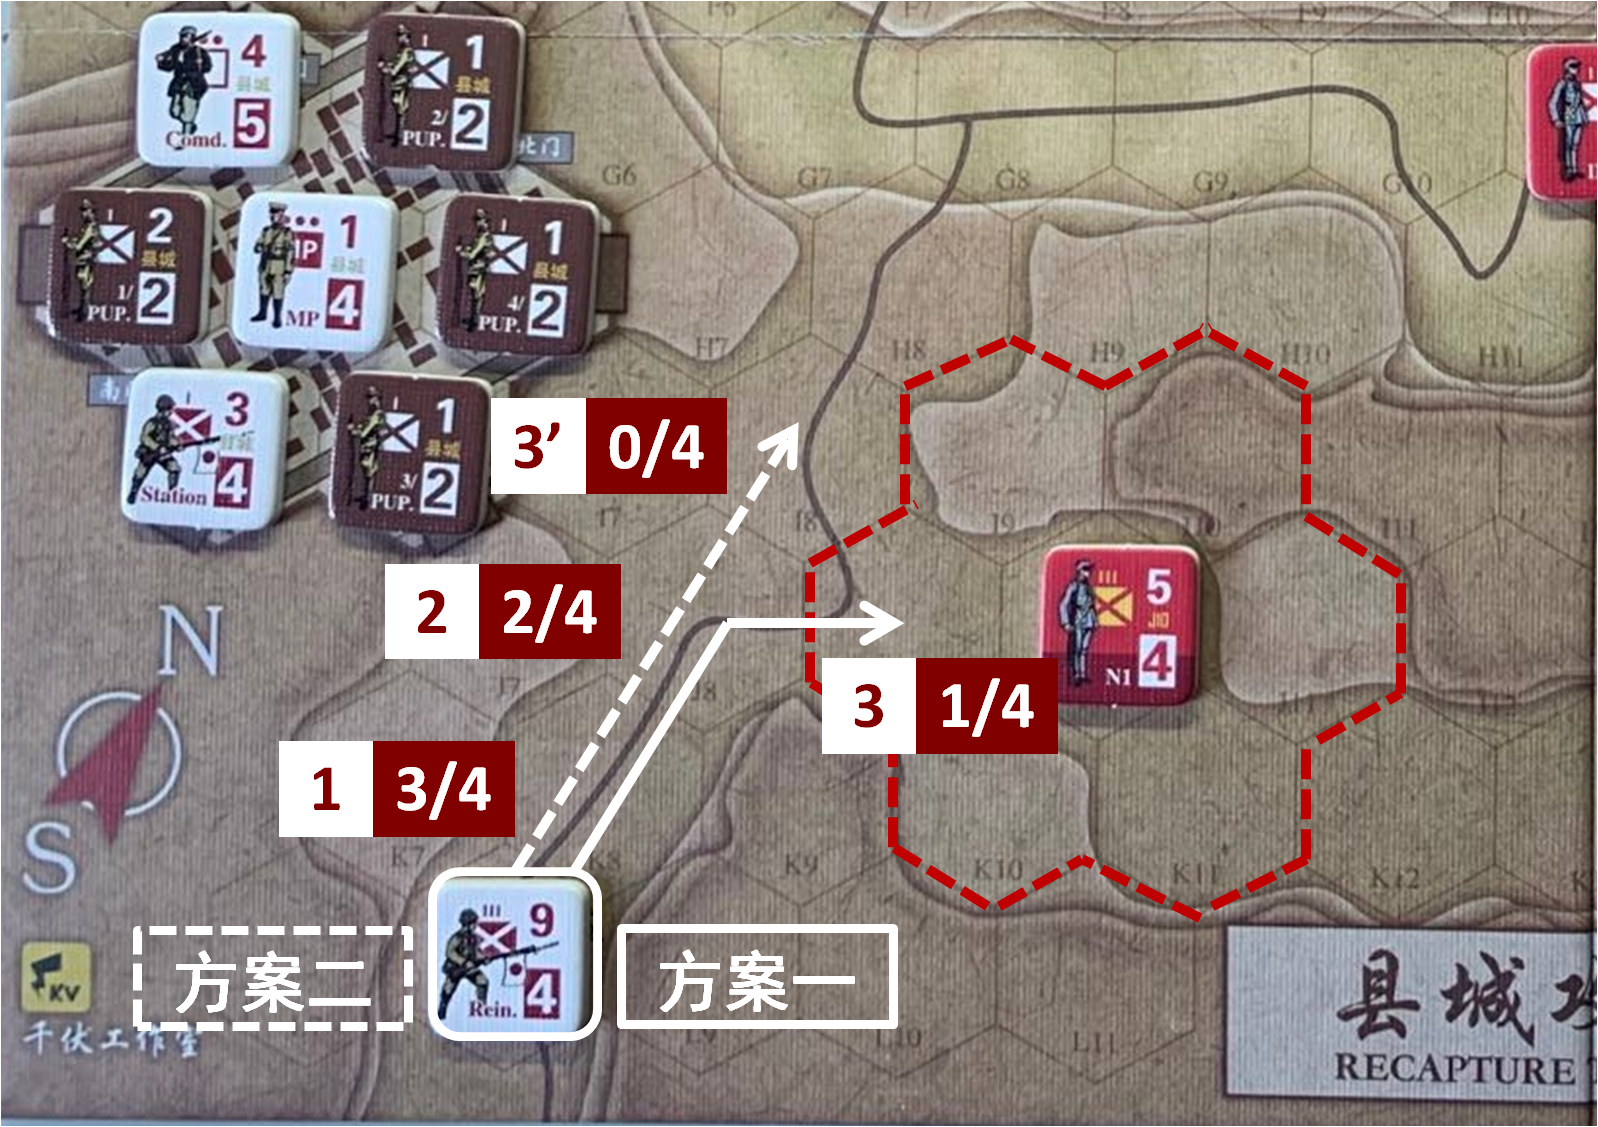 如果共军正规部队N1保持初设位置不变（J10），至本回合日方移动阶段时，初始位于赵庄方向（L8）的日军增援部队可能采取的移动方案